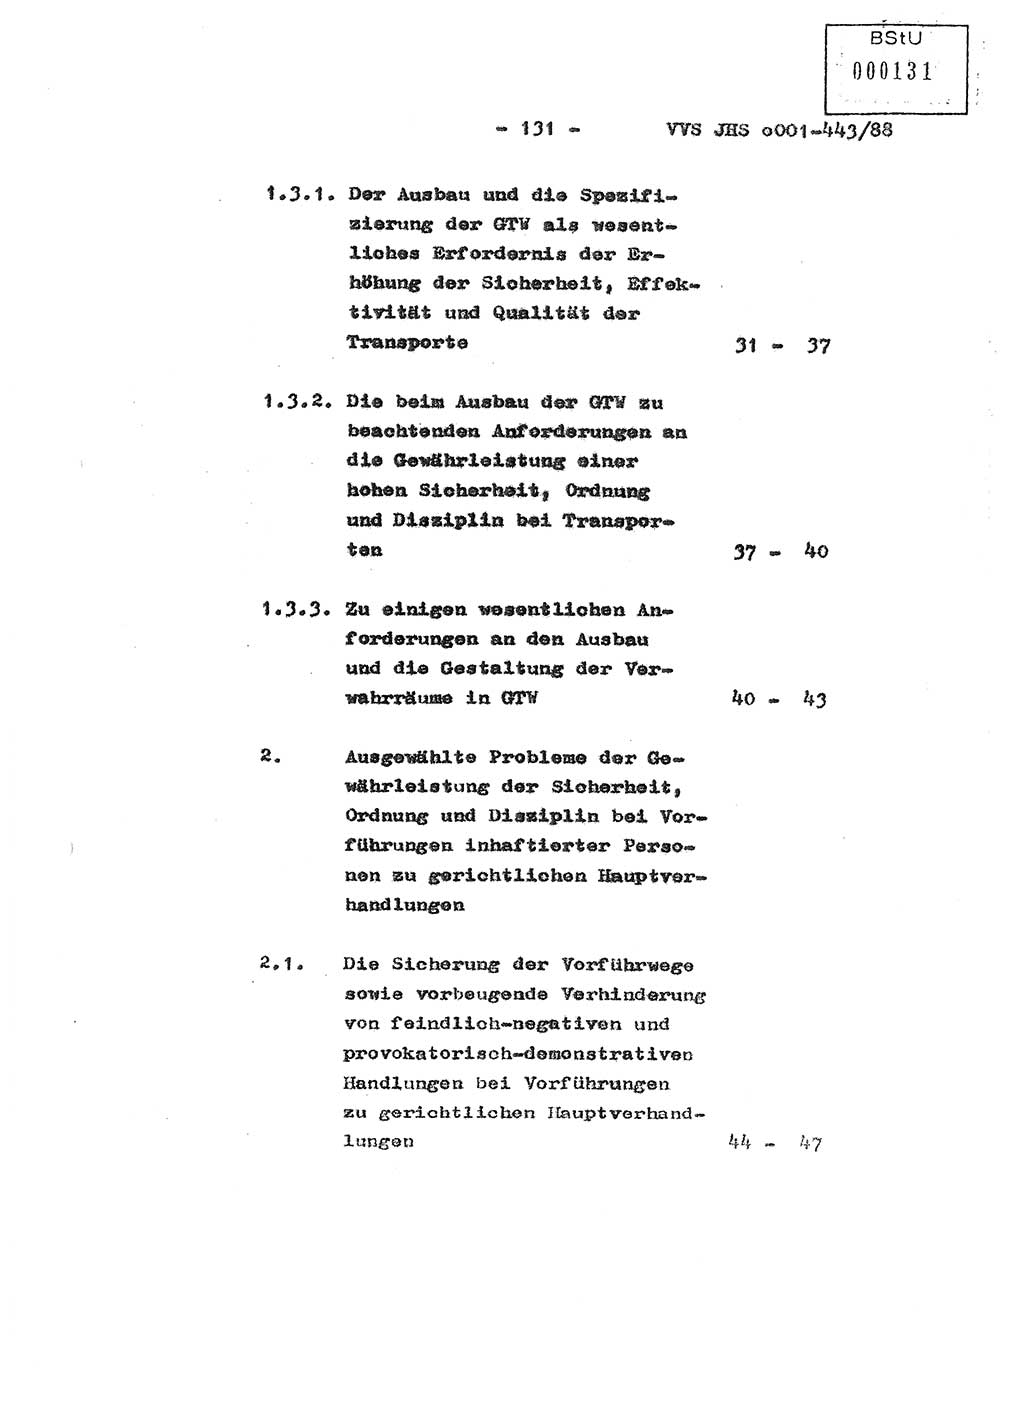 Diplomarbeit Hauptmann Michael Rast (Abt. ⅩⅣ), Major Bernd Rahaus (Abt. ⅩⅣ), Ministerium für Staatssicherheit (MfS) [Deutsche Demokratische Republik (DDR)], Juristische Hochschule (JHS), Vertrauliche Verschlußsache (VVS) o001-443/88, Potsdam 1988, Seite 131 (Dipl.-Arb. MfS DDR JHS VVS o001-443/88 1988, S. 131)